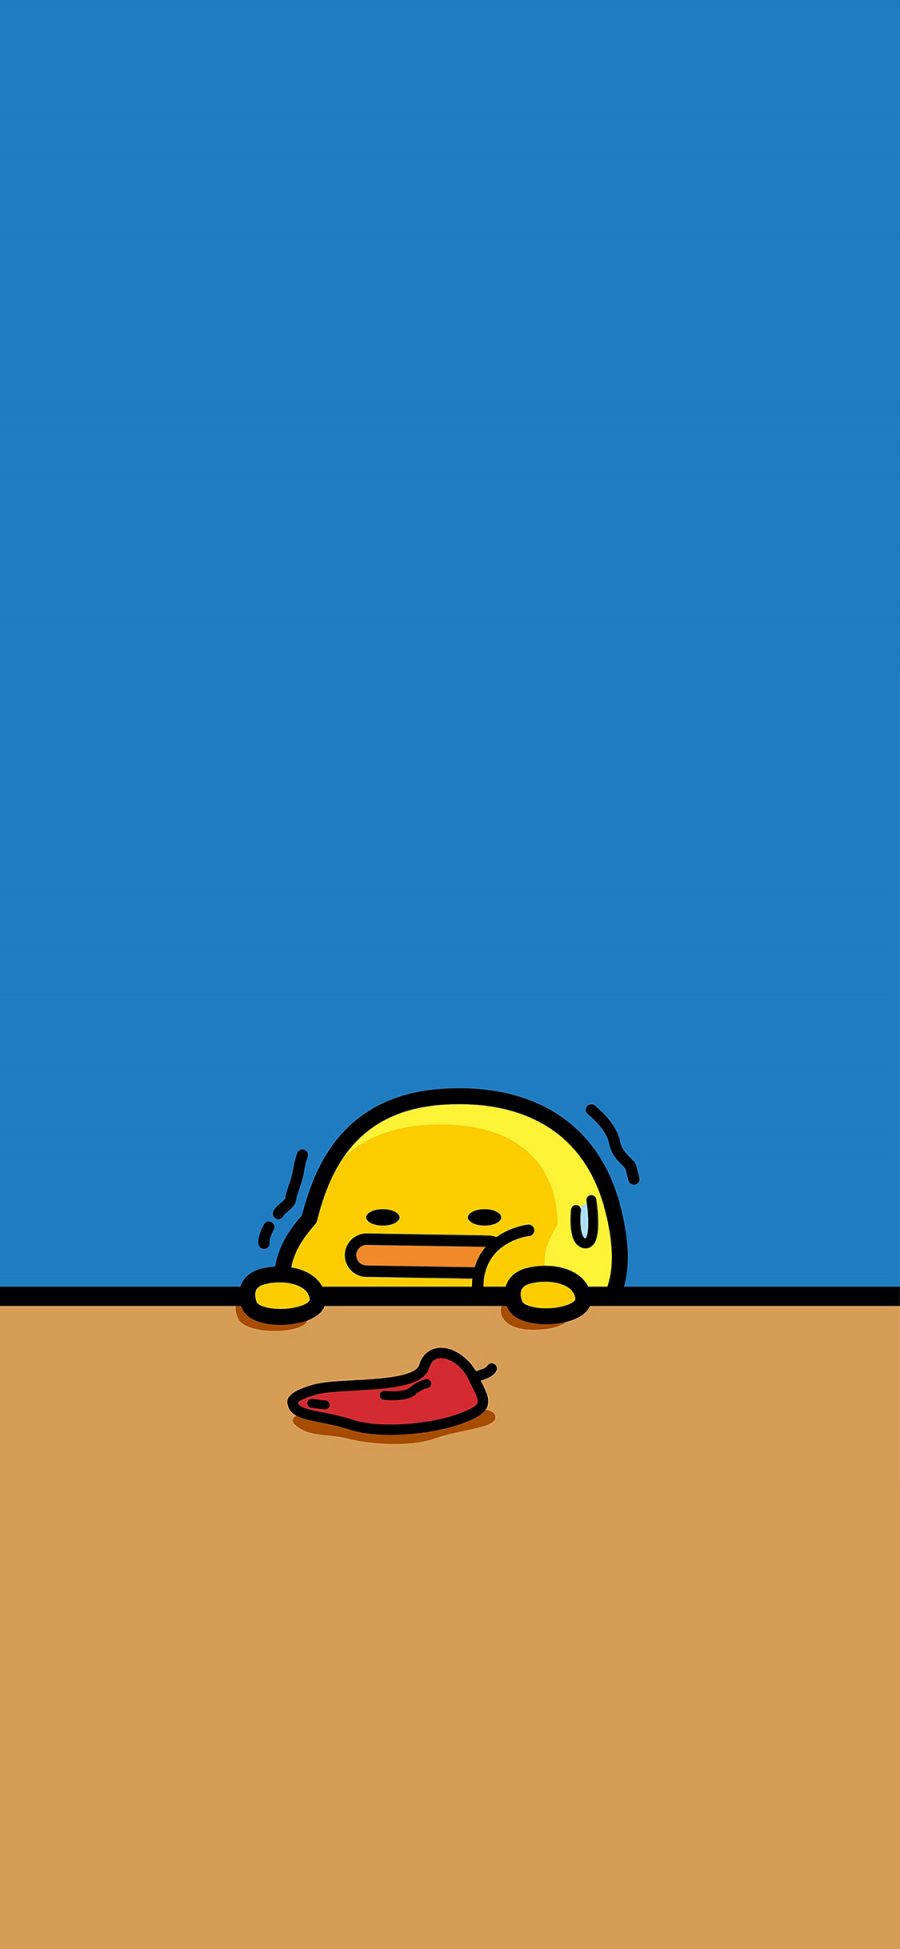 [2436×1125]紧张 辣椒 小鸡 卡通 可爱 苹果手机动漫壁纸图片